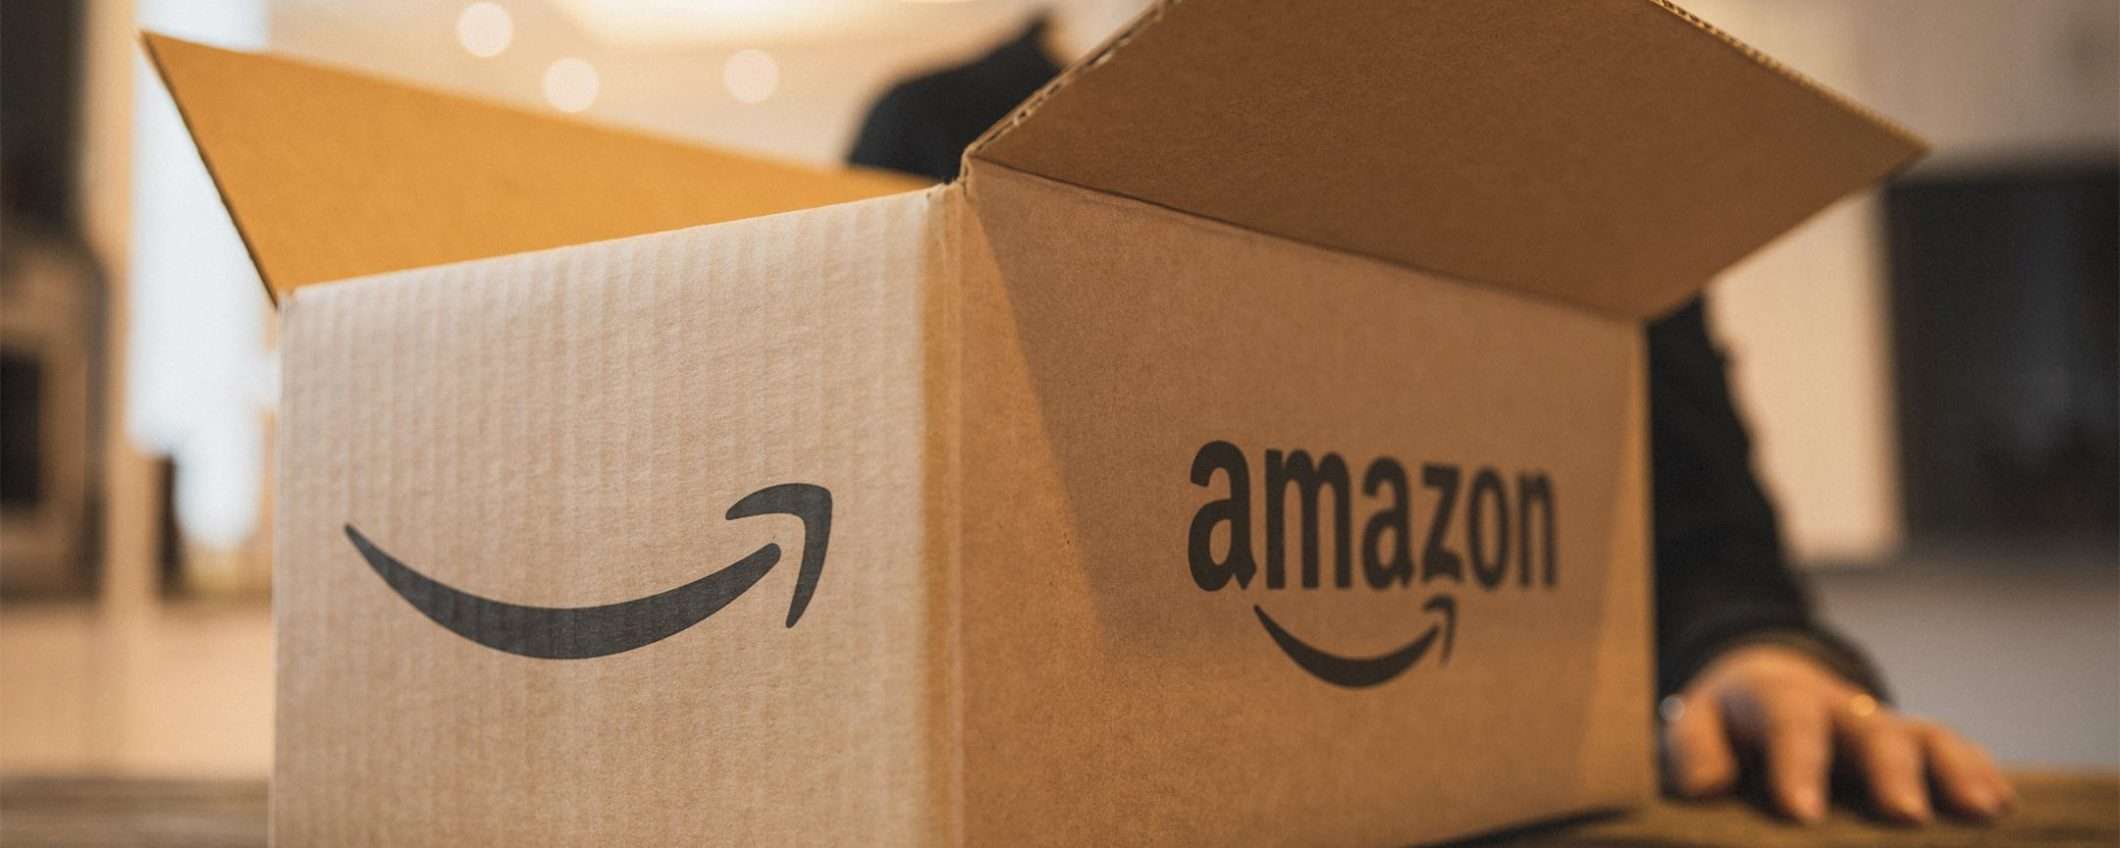 Amazon Prime: un buono da 10 euro con Assistant